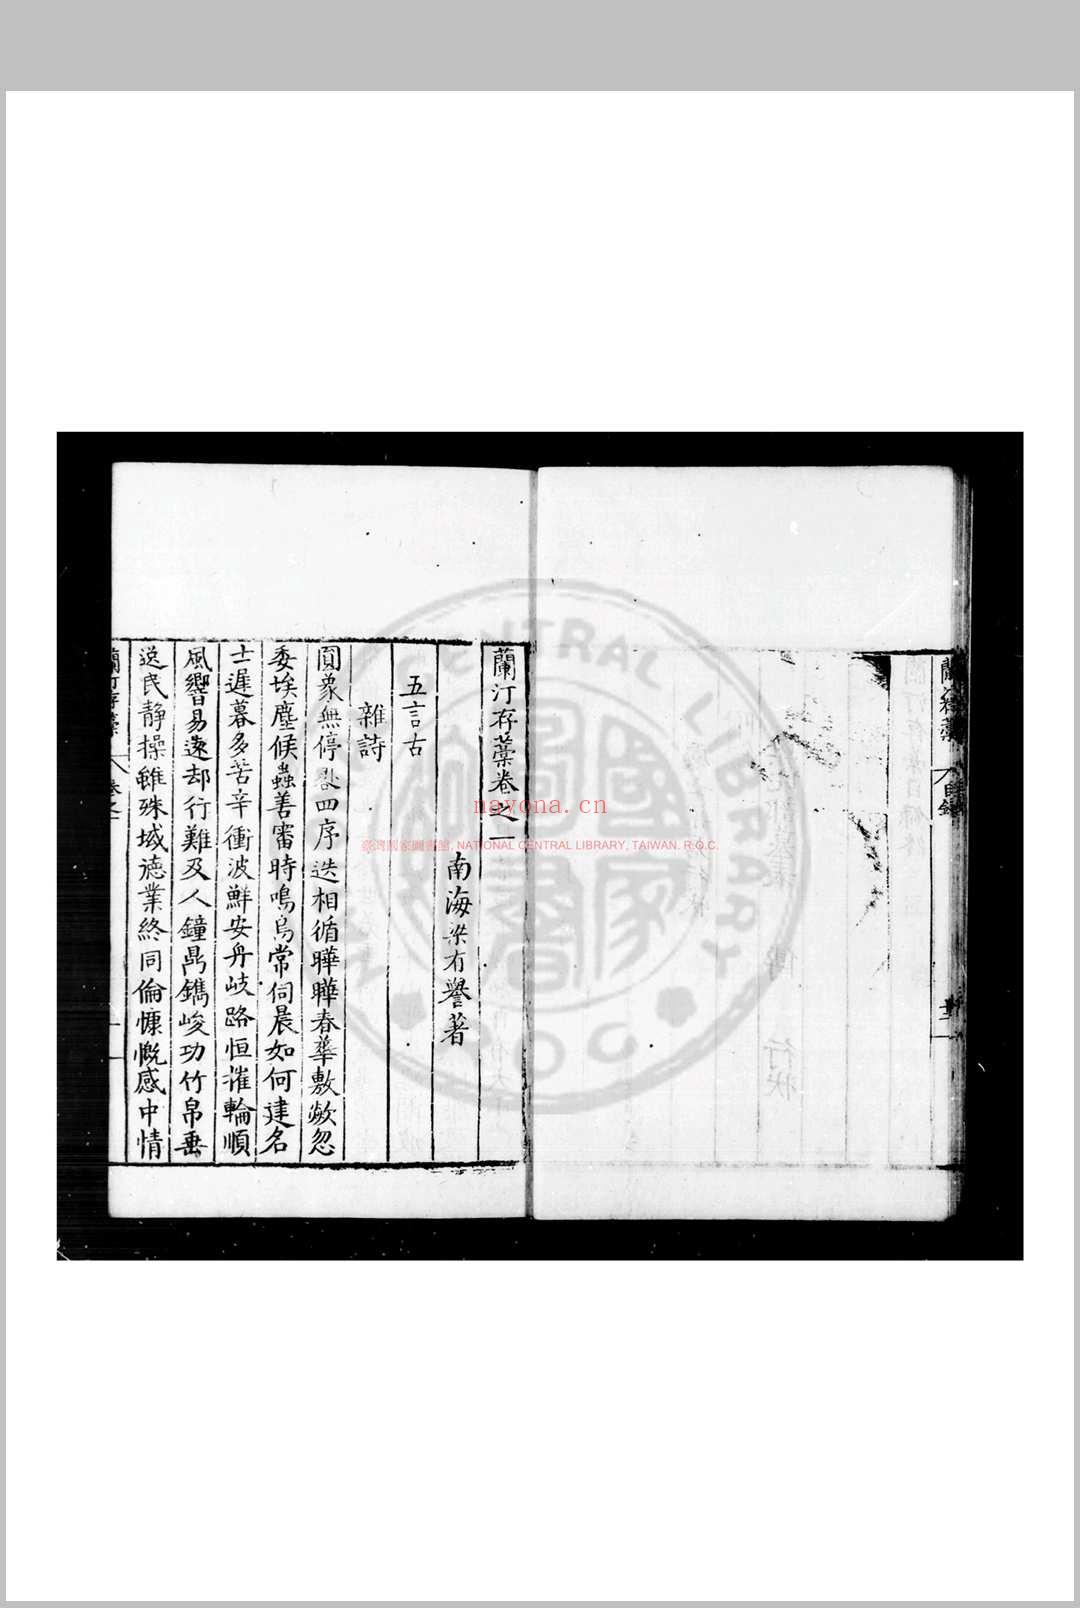 兰汀存稿 (明)梁有誉撰 明嘉靖乙丑(四十四年, 1565)原刊万历间增刊附录本